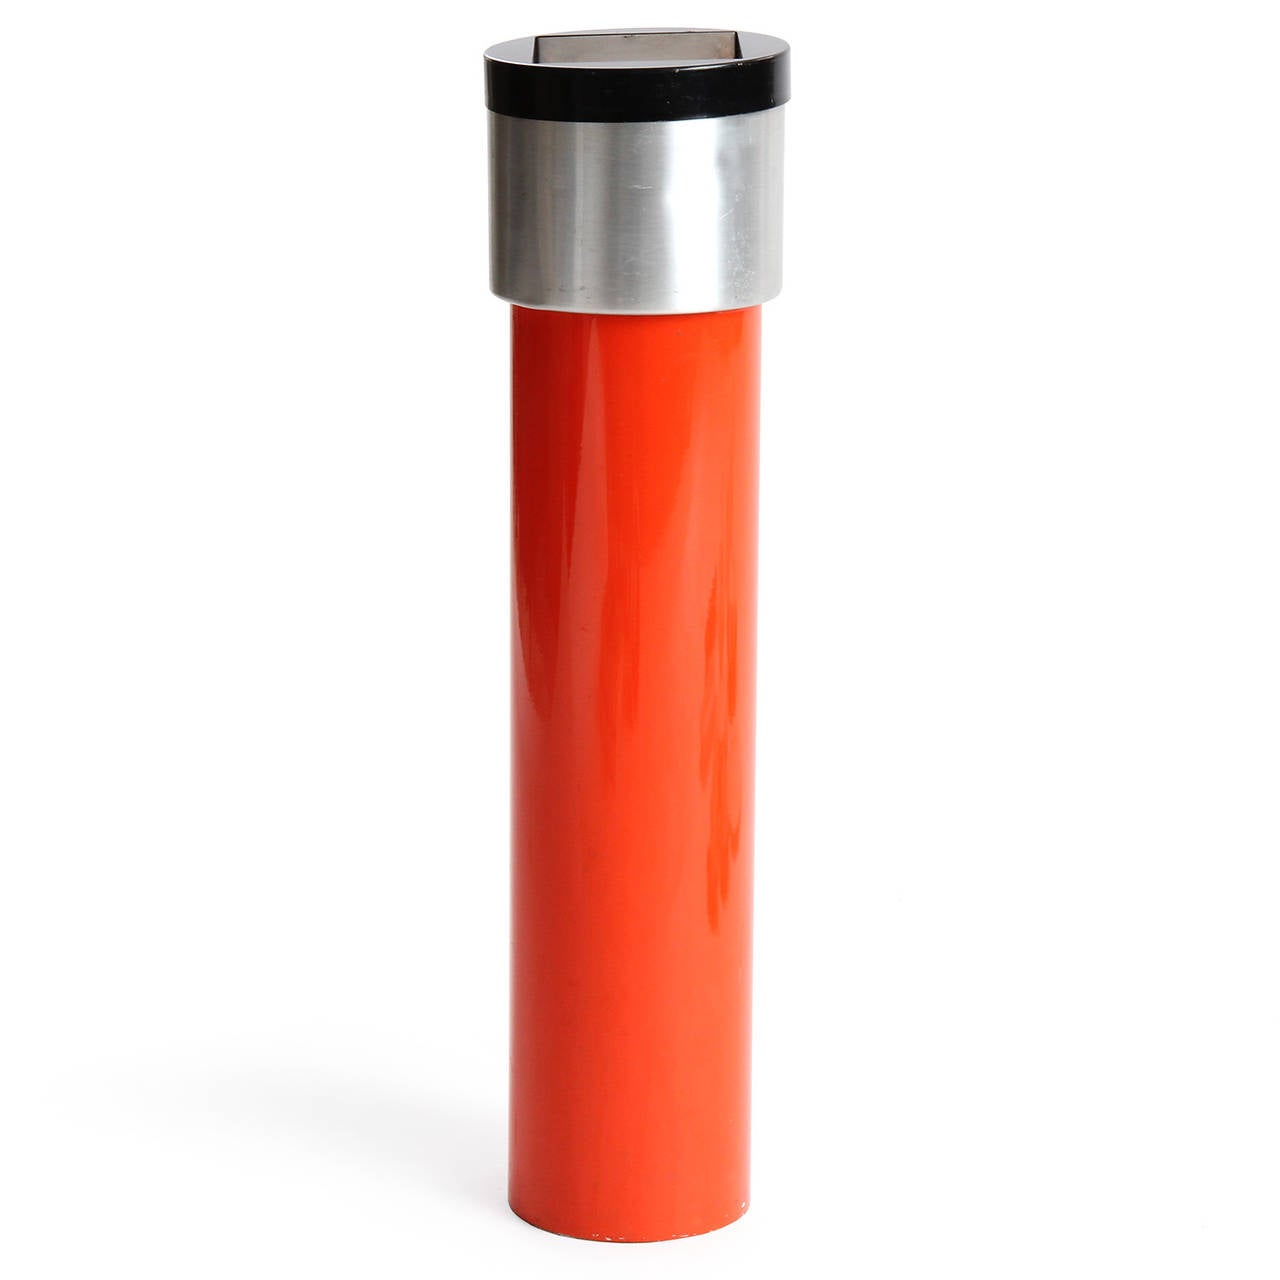 Ein grafischer und ausdrucksstarker, beschwerter Eschenständer in Form einer kühnen roten Säule, wobei die aluminiumfarbene und lackierte Oberseite einen herausnehmbaren Einsatz enthält.